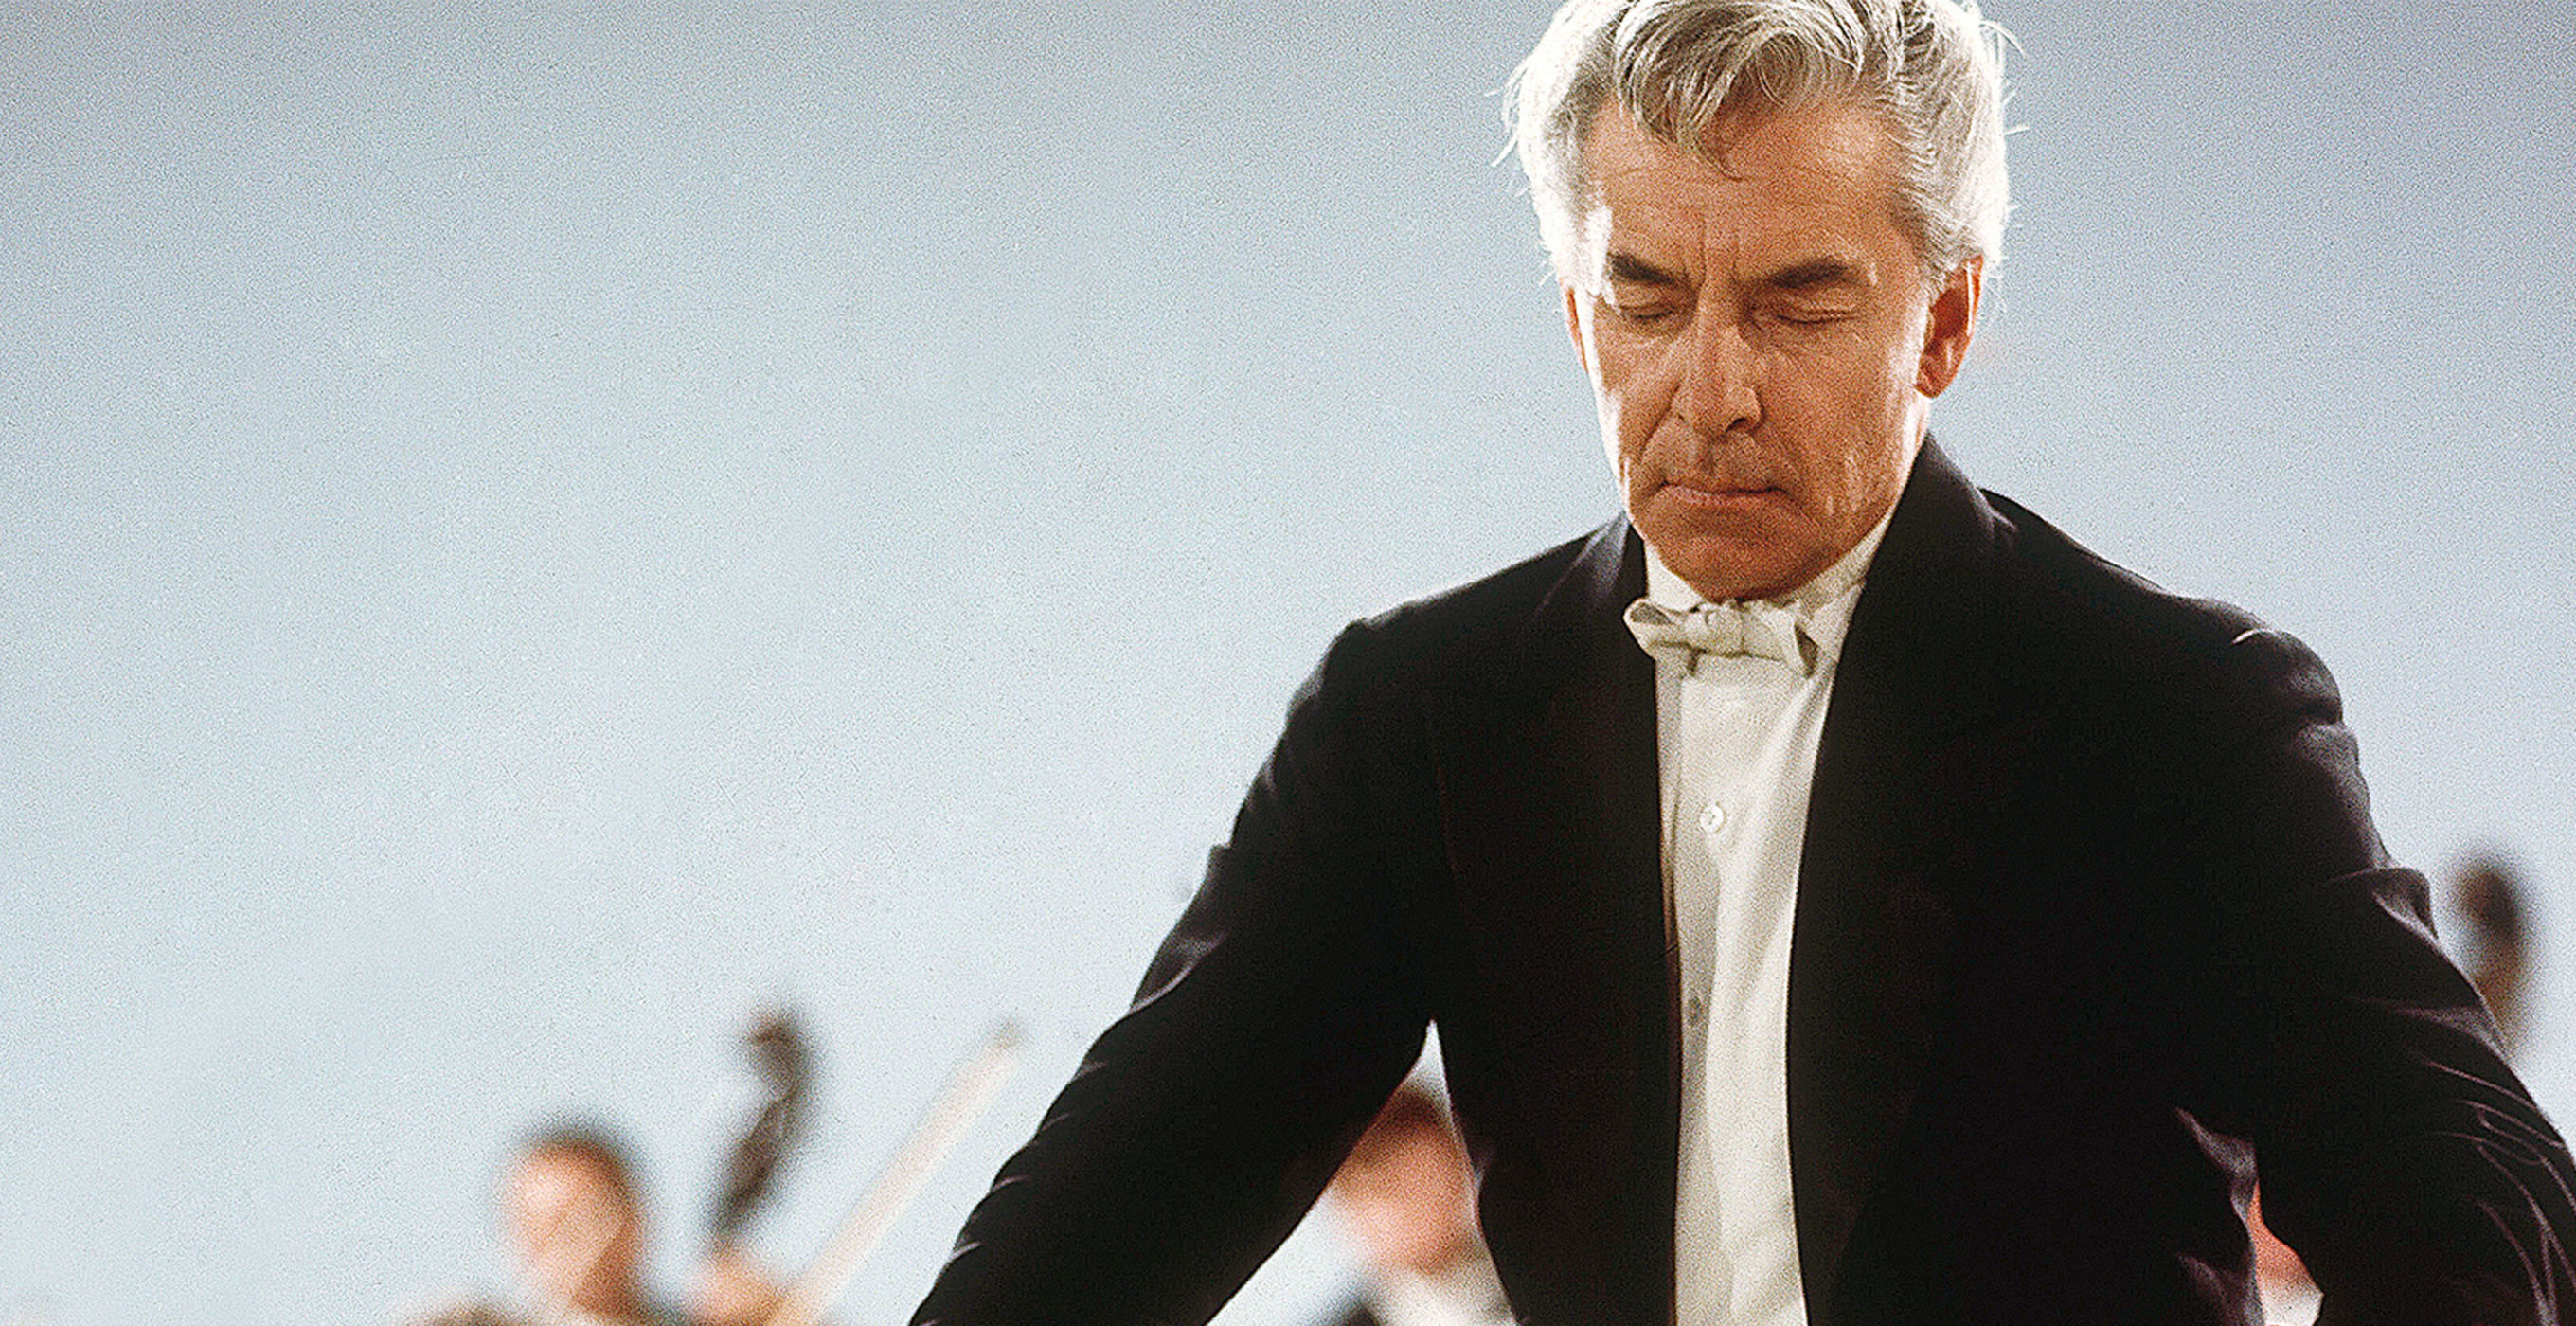 Herbert von Karajan online concert | Digital Concert Hall